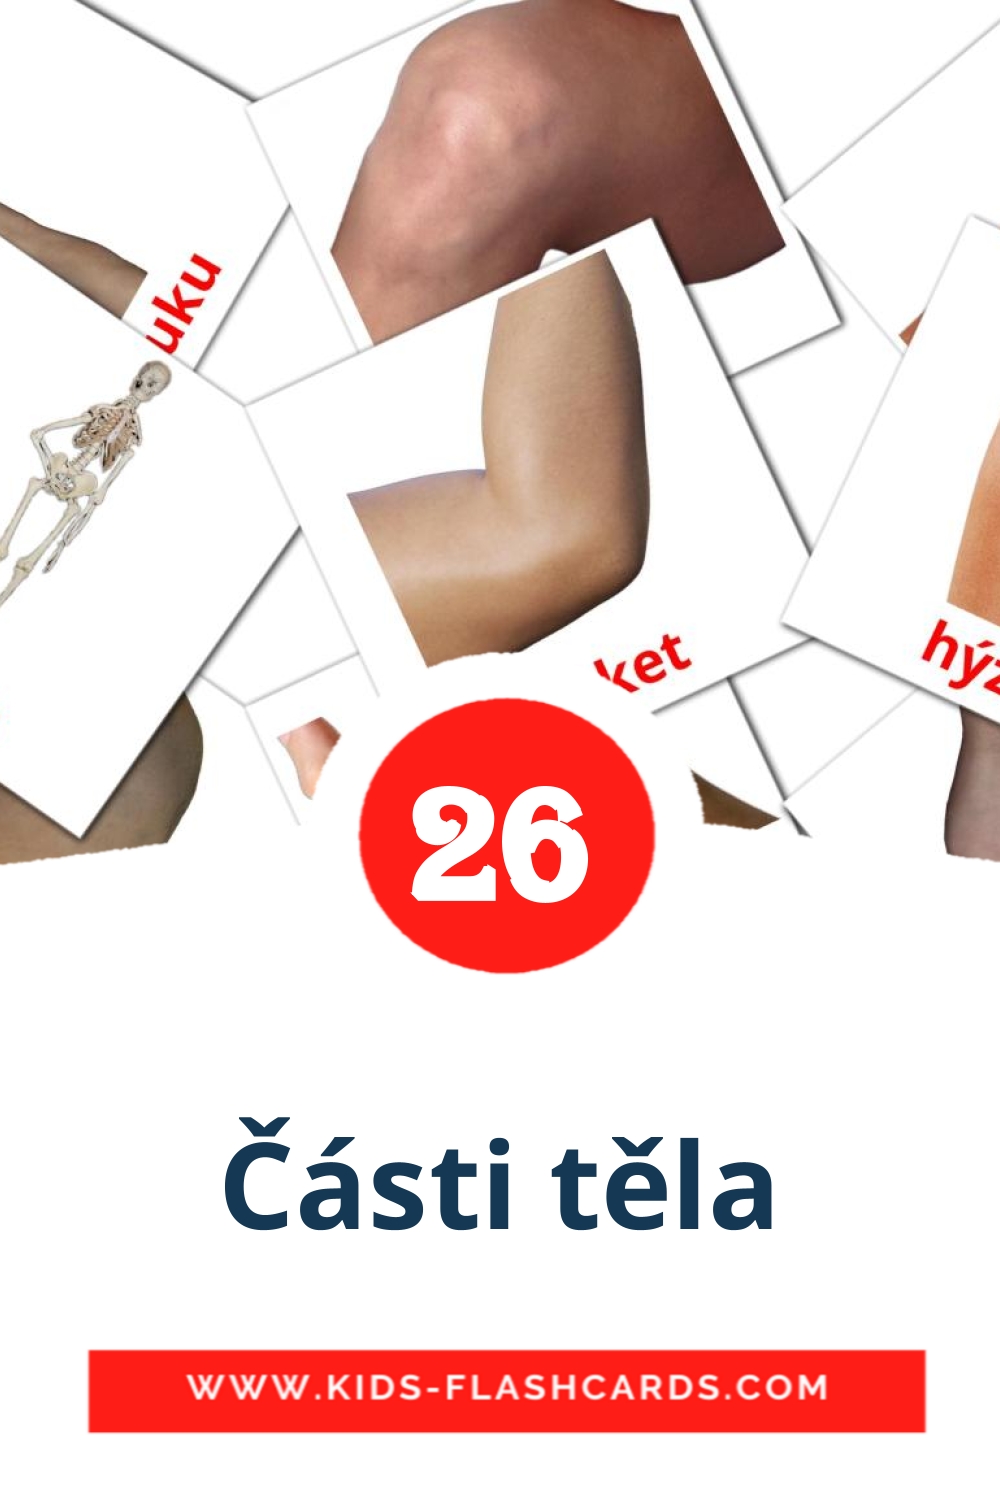 Části těla на чешском для Детского Сада (26 карточек)